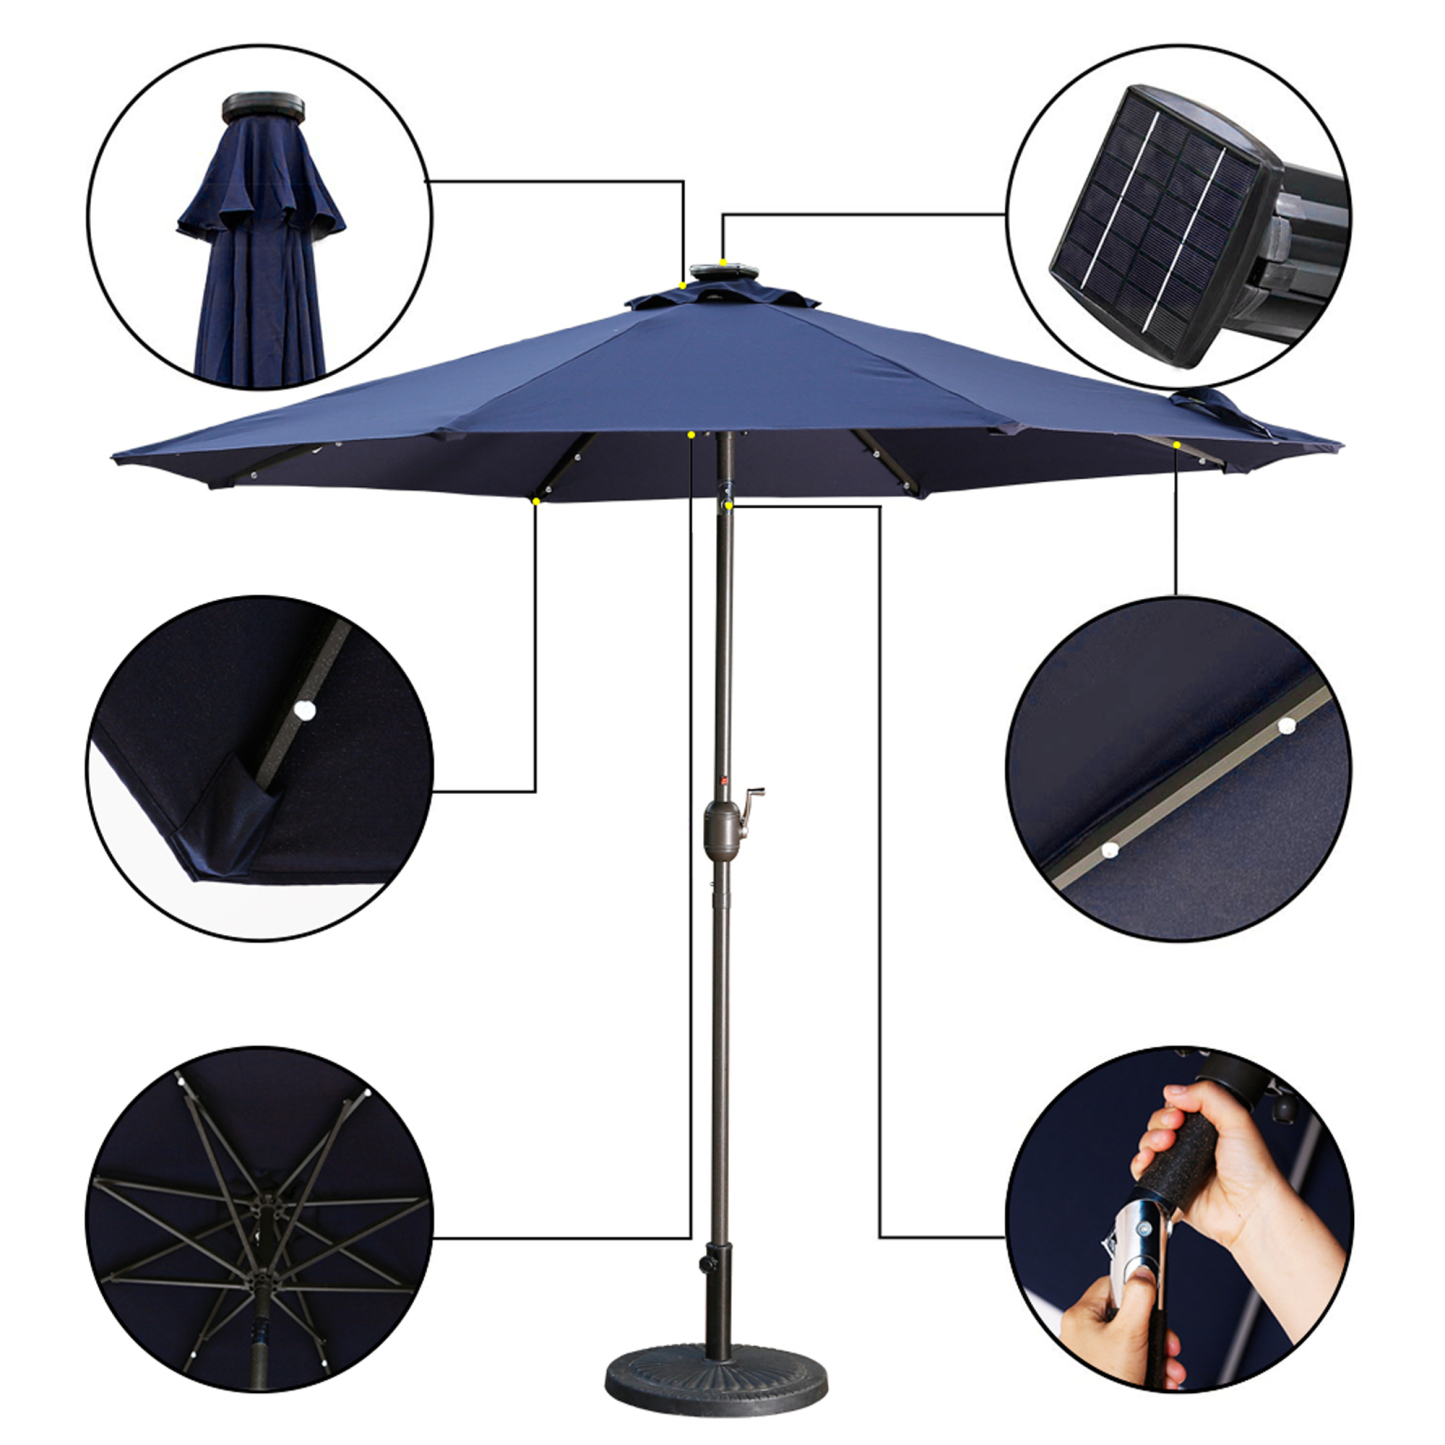 Mondawe 9 Ft 32 LED Round Solar Patio Market Umbrella-Mondawe